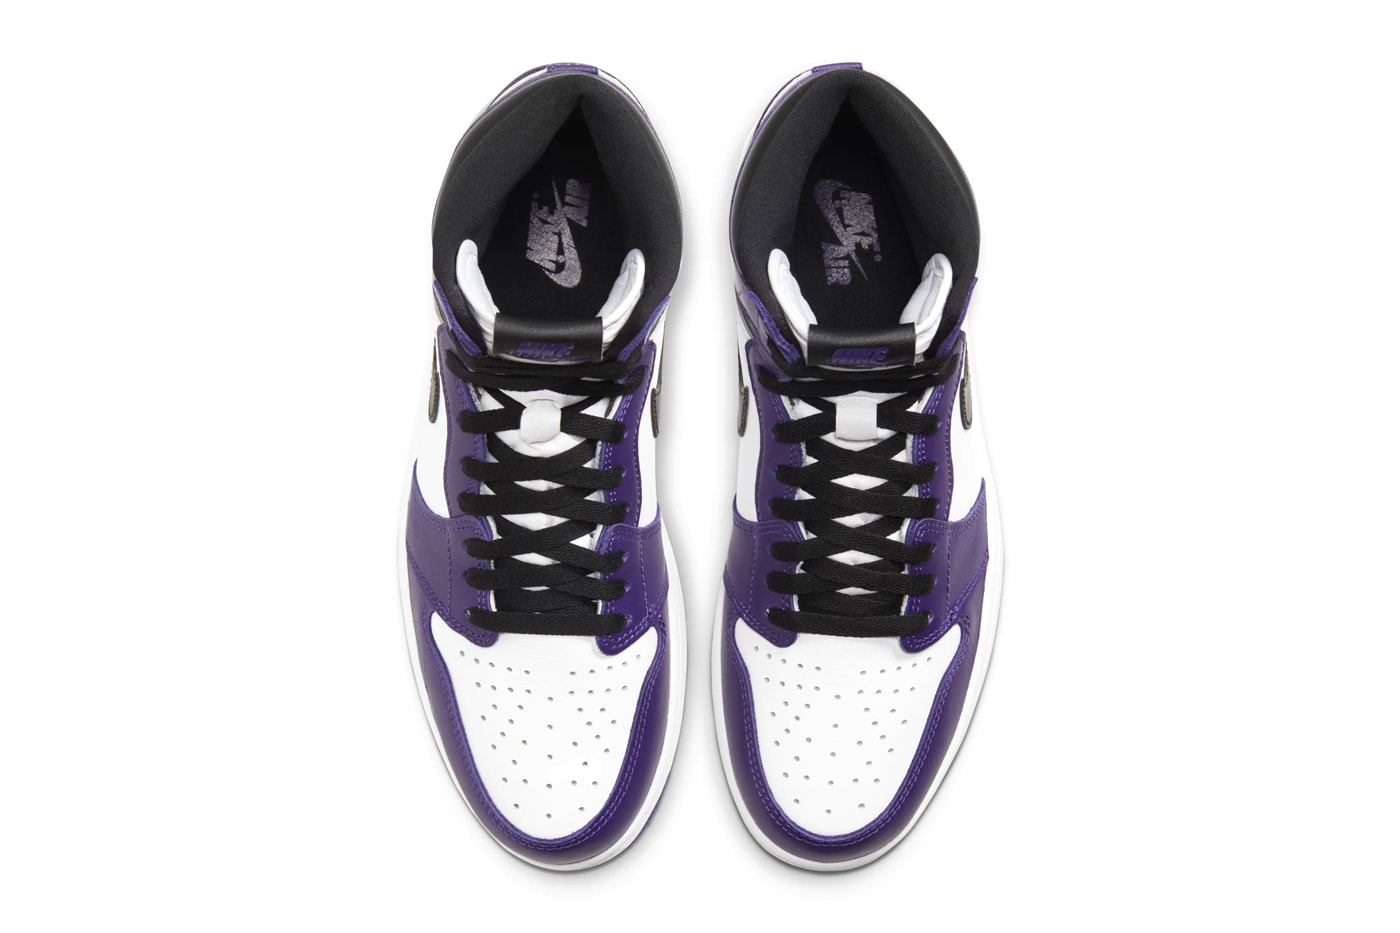 Air Jordan 1 Retro High OG Court Purple Official Look 555088-500 Release Info Black White Brand 575441-500